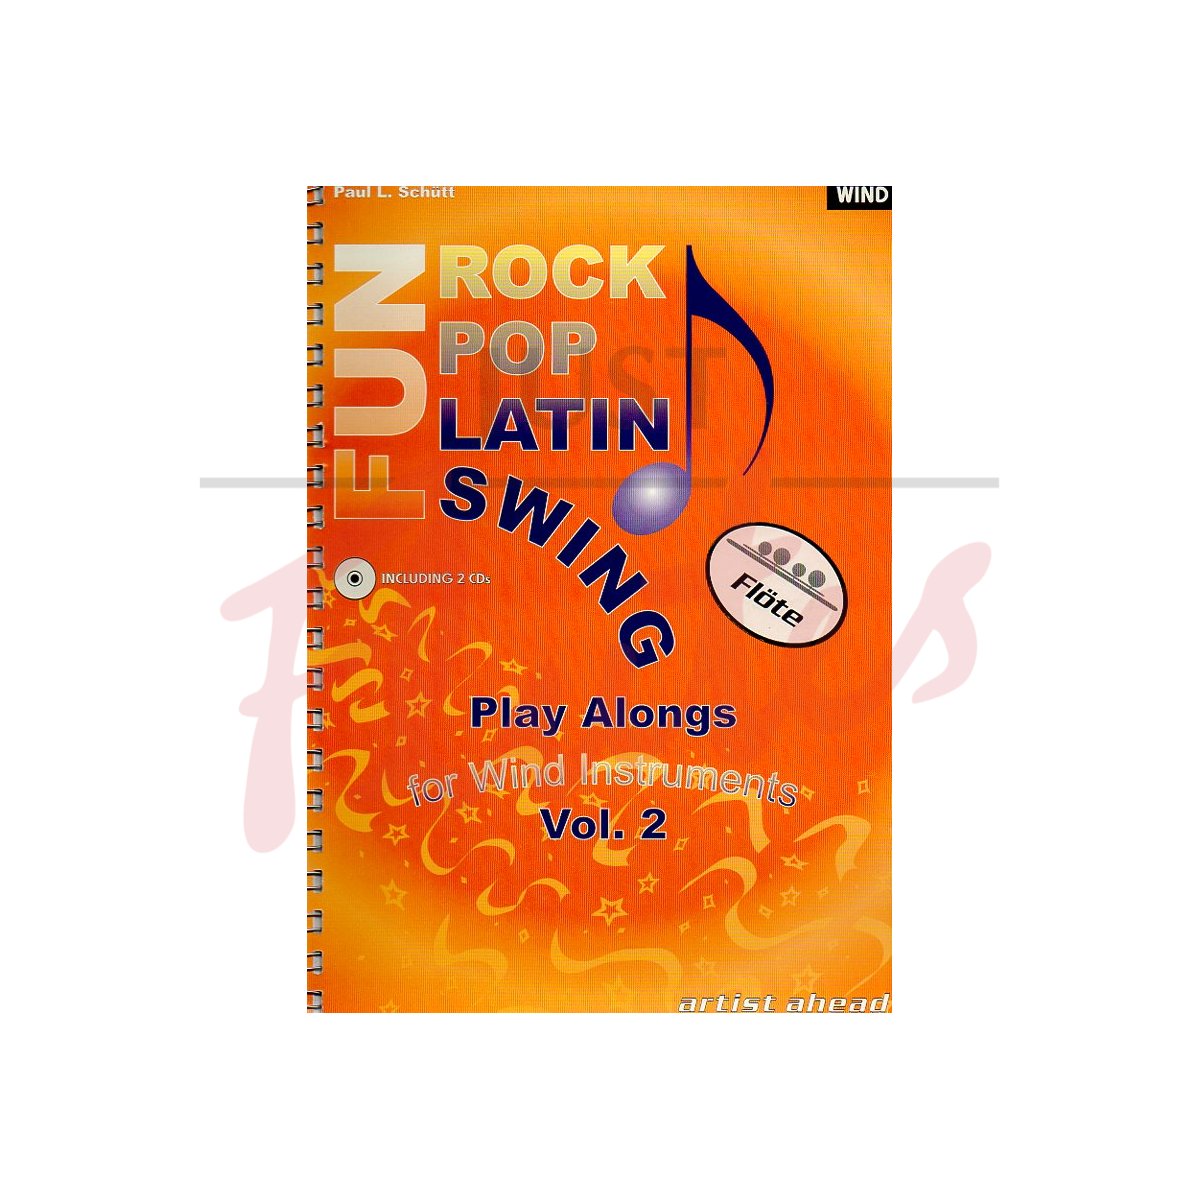 Fun Rock Pop Latin Swing Vol 2